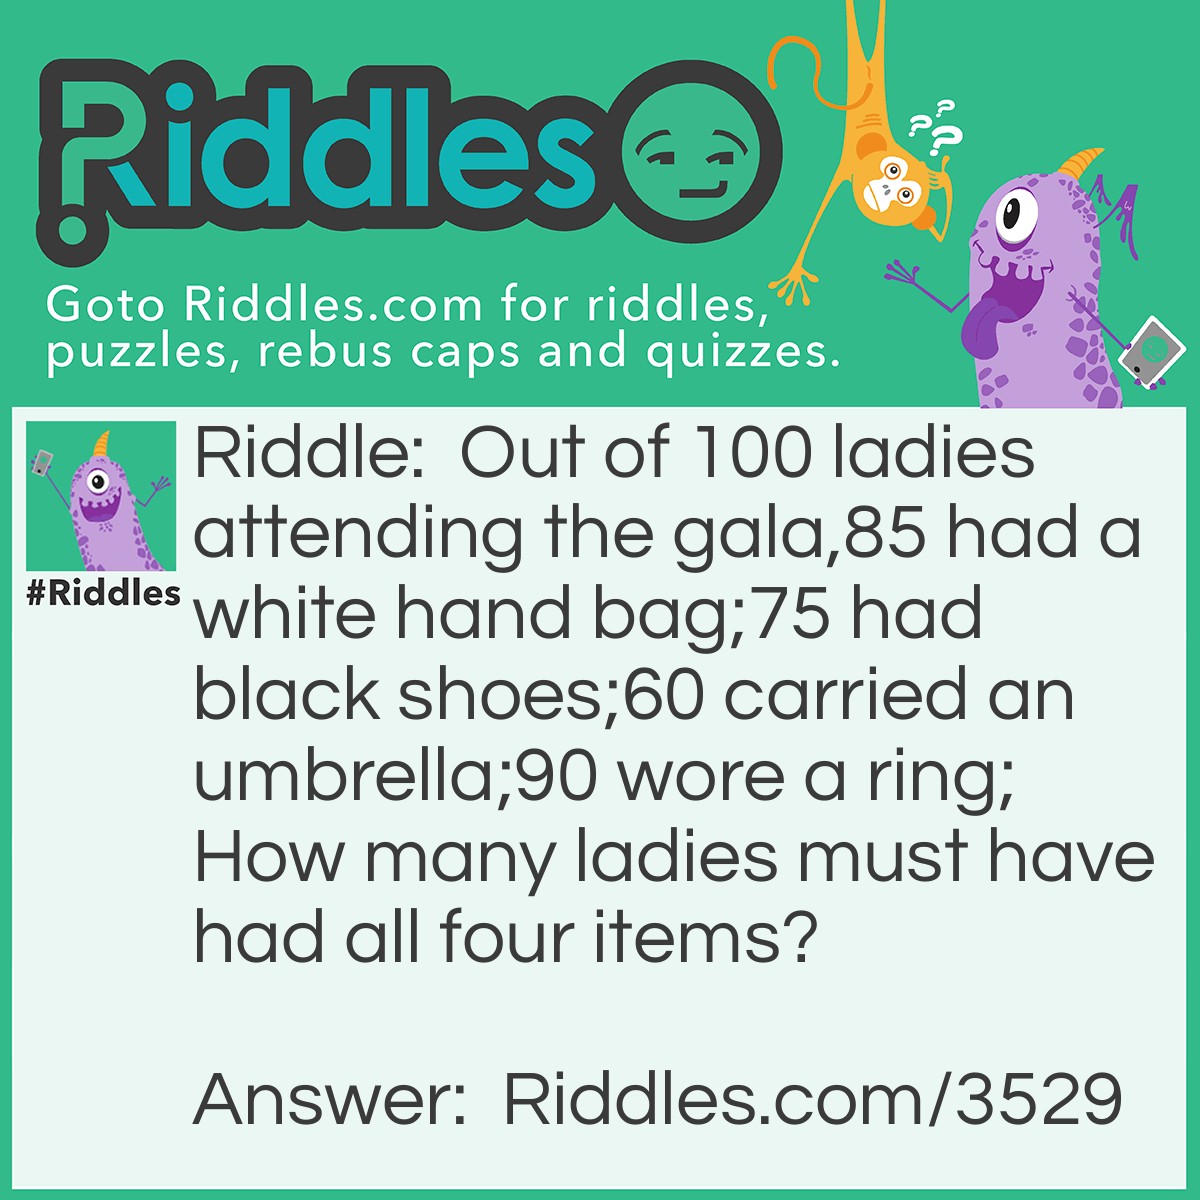 https://riddles.com/img/riddle/square/riddle-meme-3529.jpg